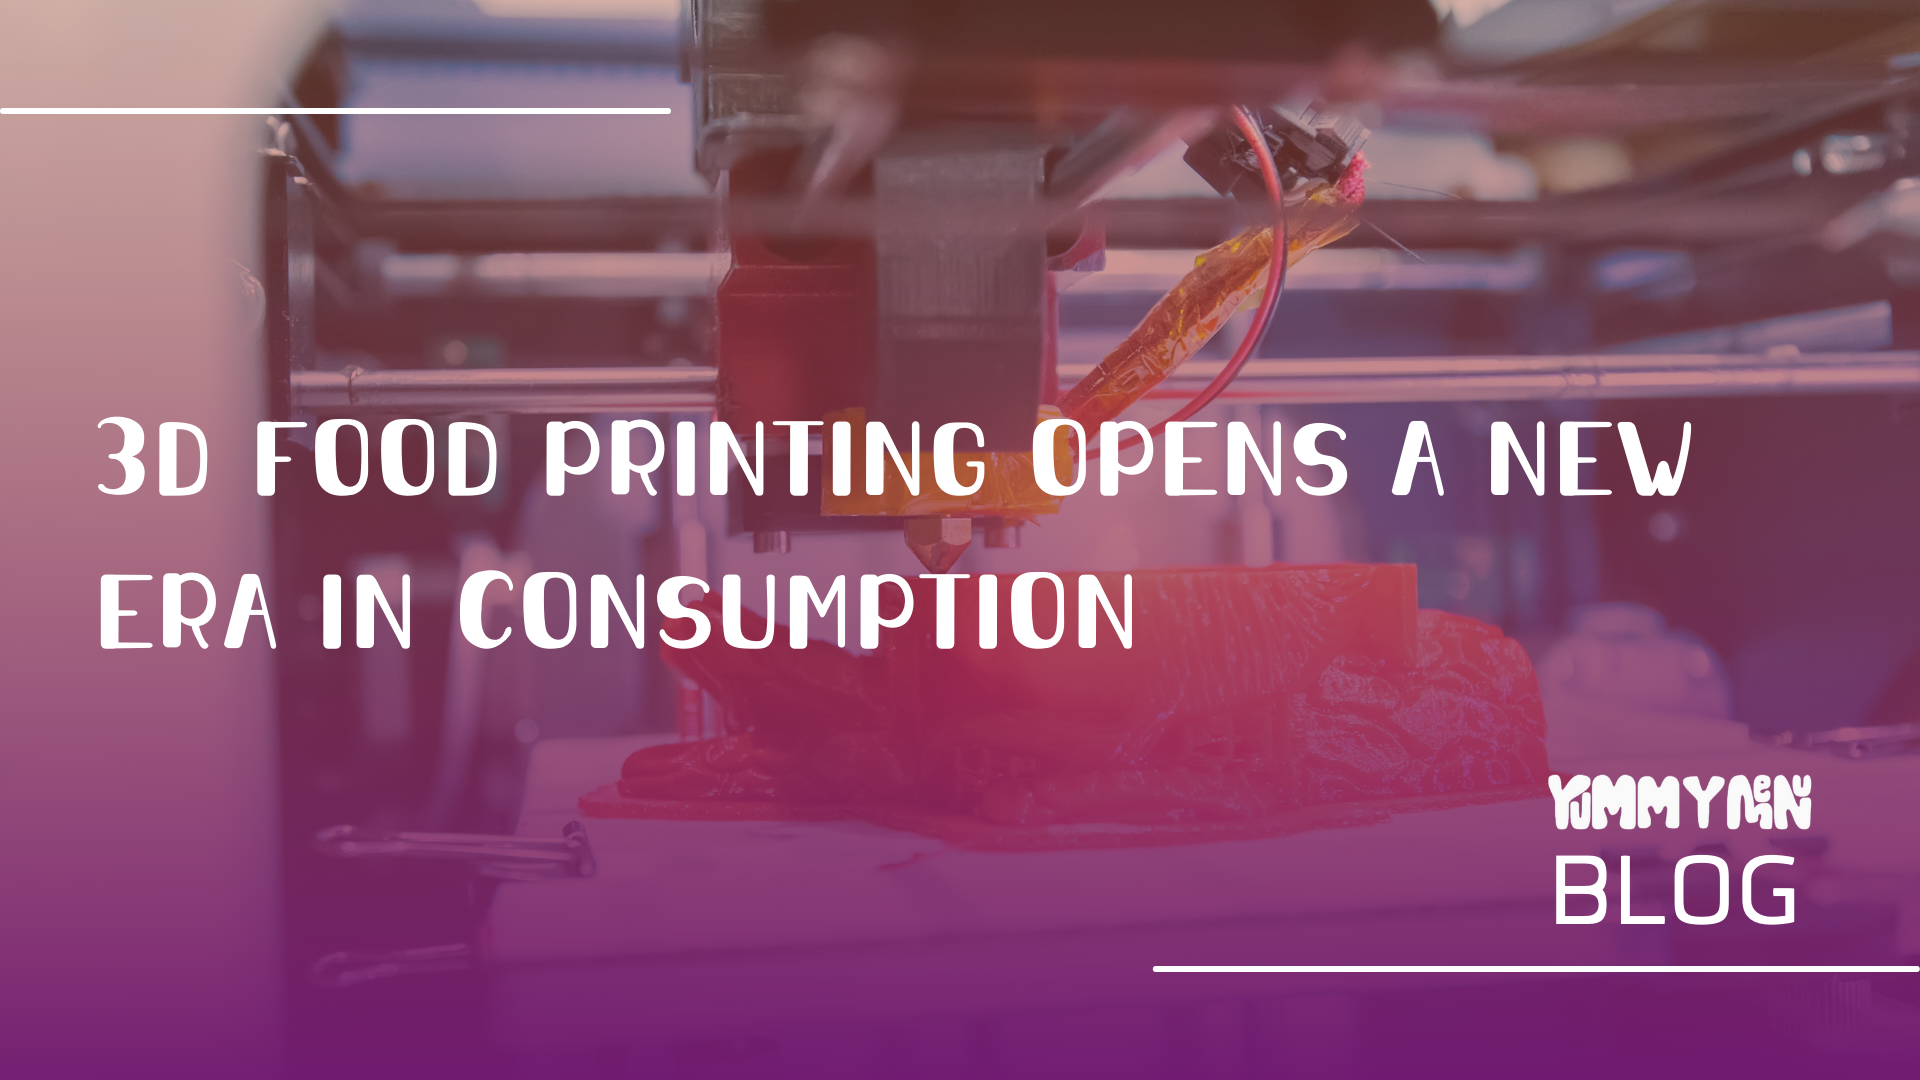 Der 3D-Lebensmitteldruck eröffnet eine neue Ära im Konsum